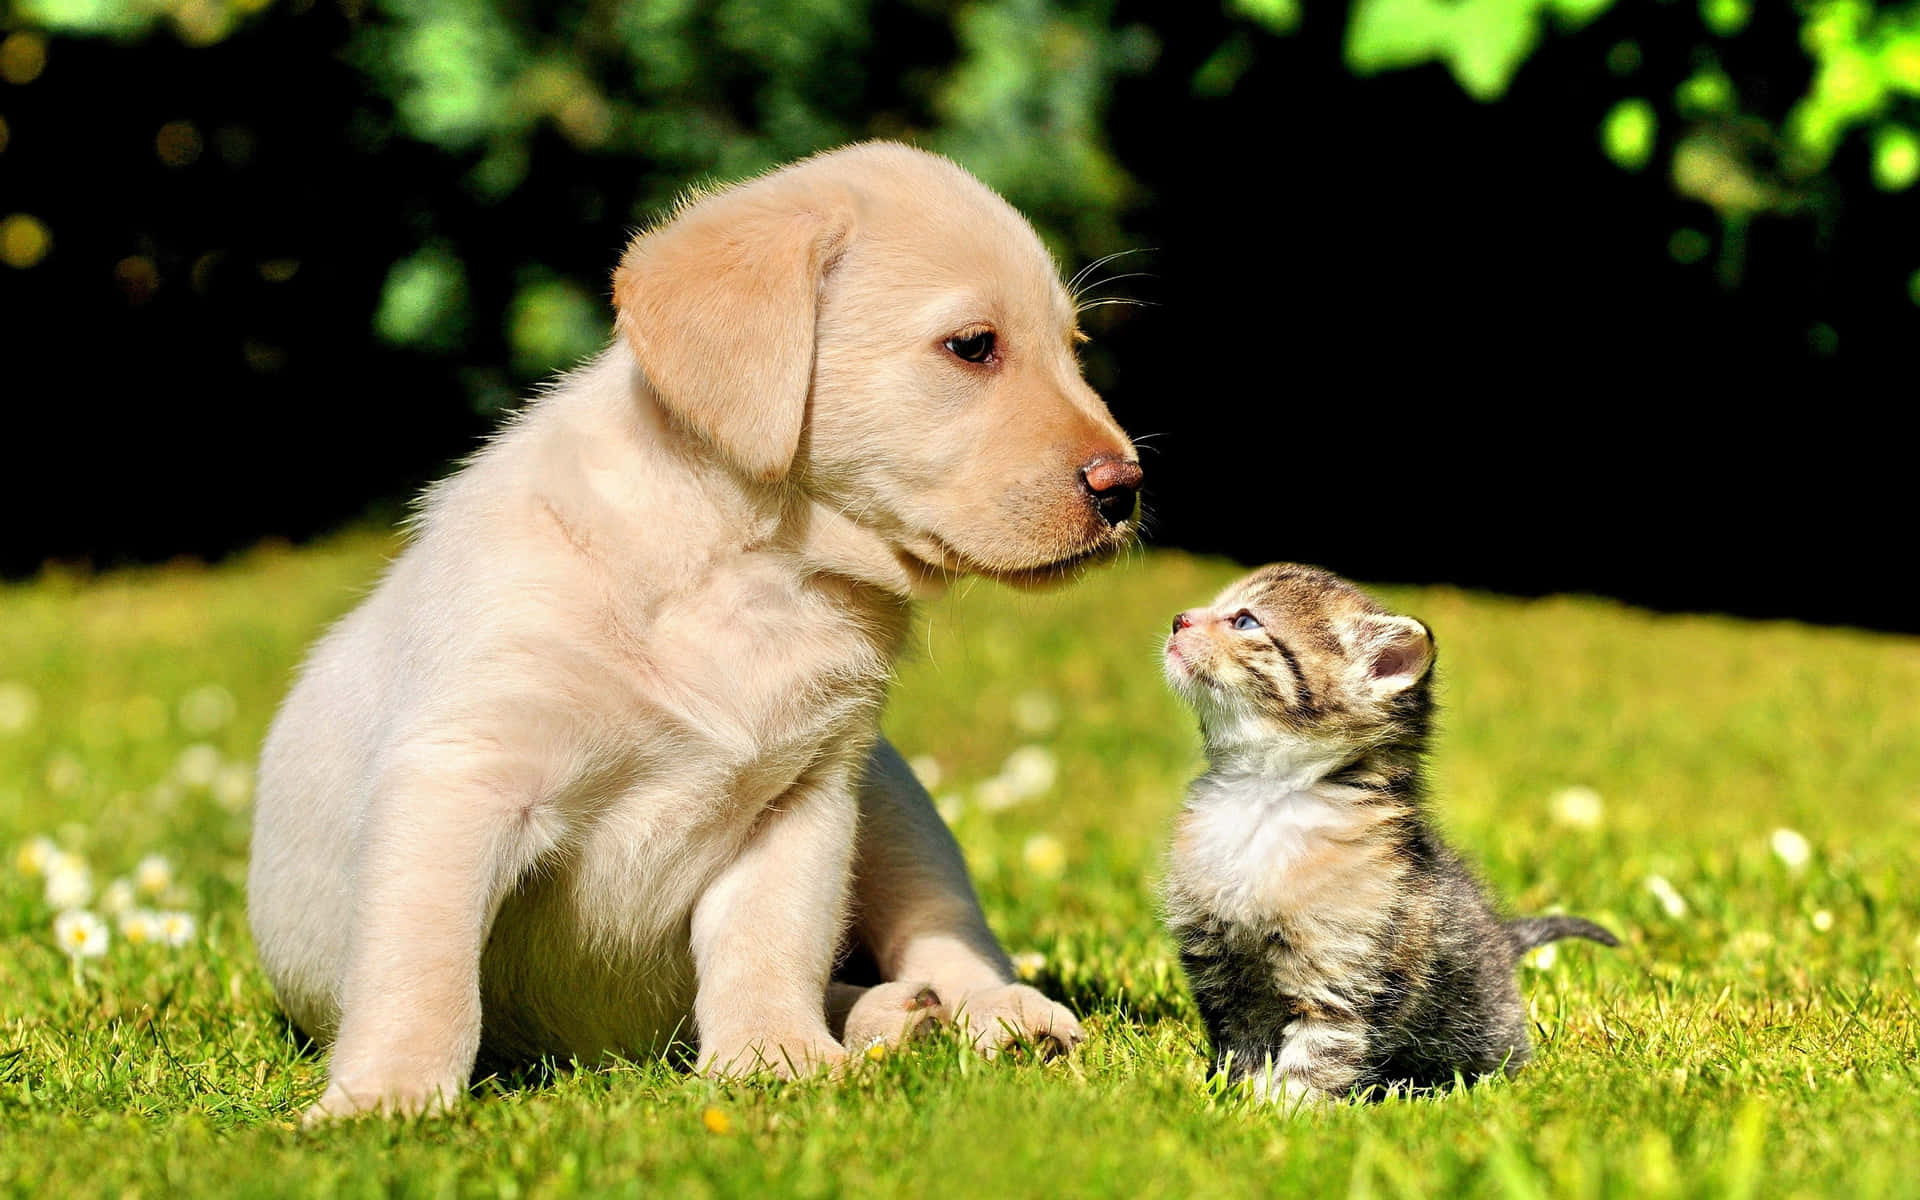 Et smukt øjeblik mellem en killing og hund. Wallpaper